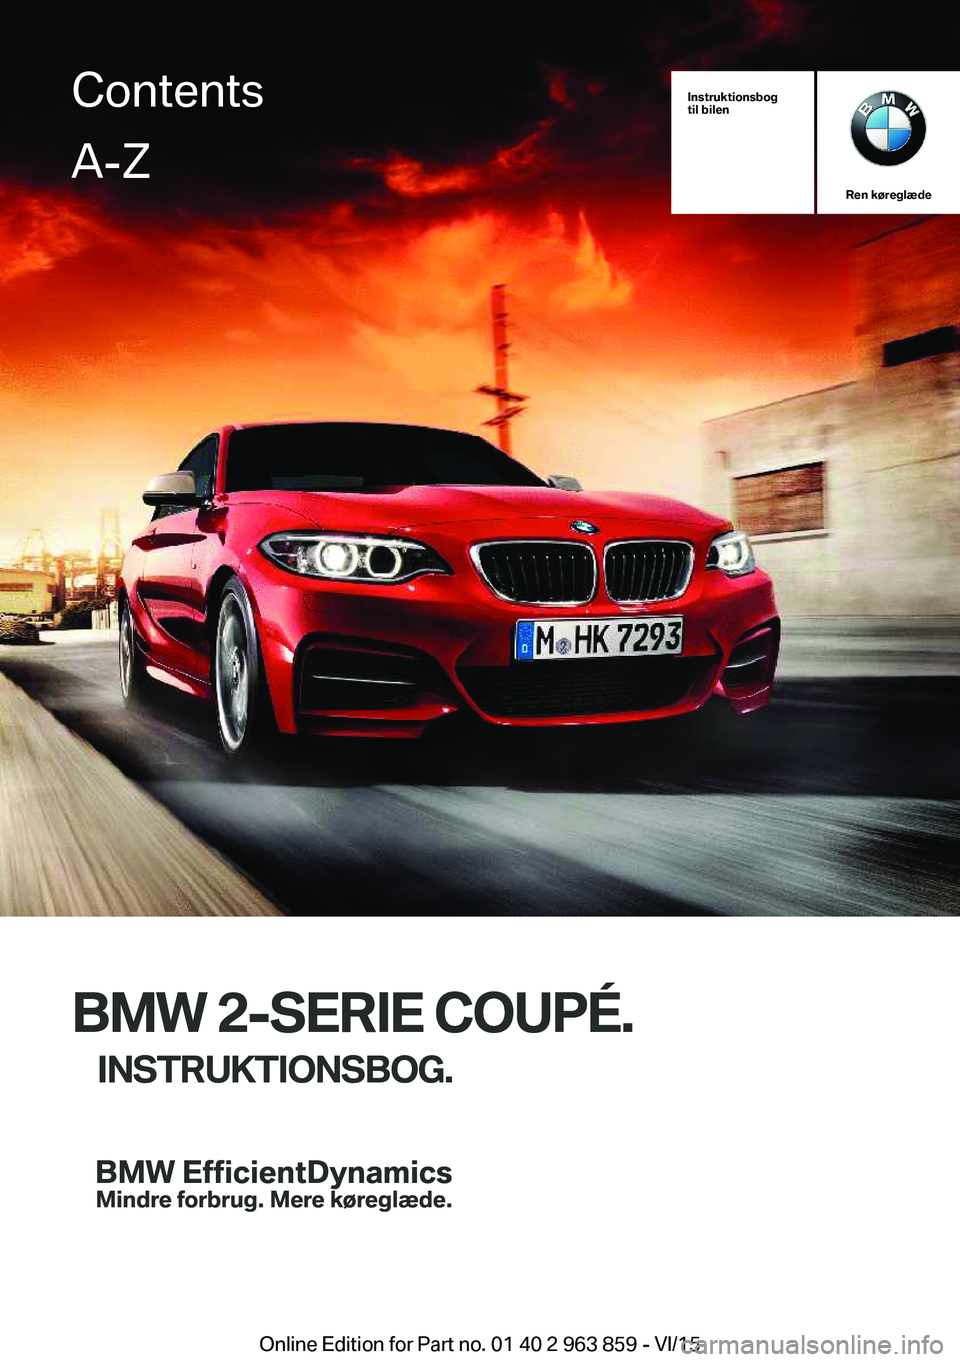 BMW 2 SERIES COUPE 2016  InstruktionsbØger (in Danish) Instruktionsbog
til bilen
Ren køreglæde
BMW 2-SERIE COUPÉ.
INSTRUKTIONSBOG.
ContentsA-Z
Online Edition for Part no. 01 40 2 963 859 - VI/15   